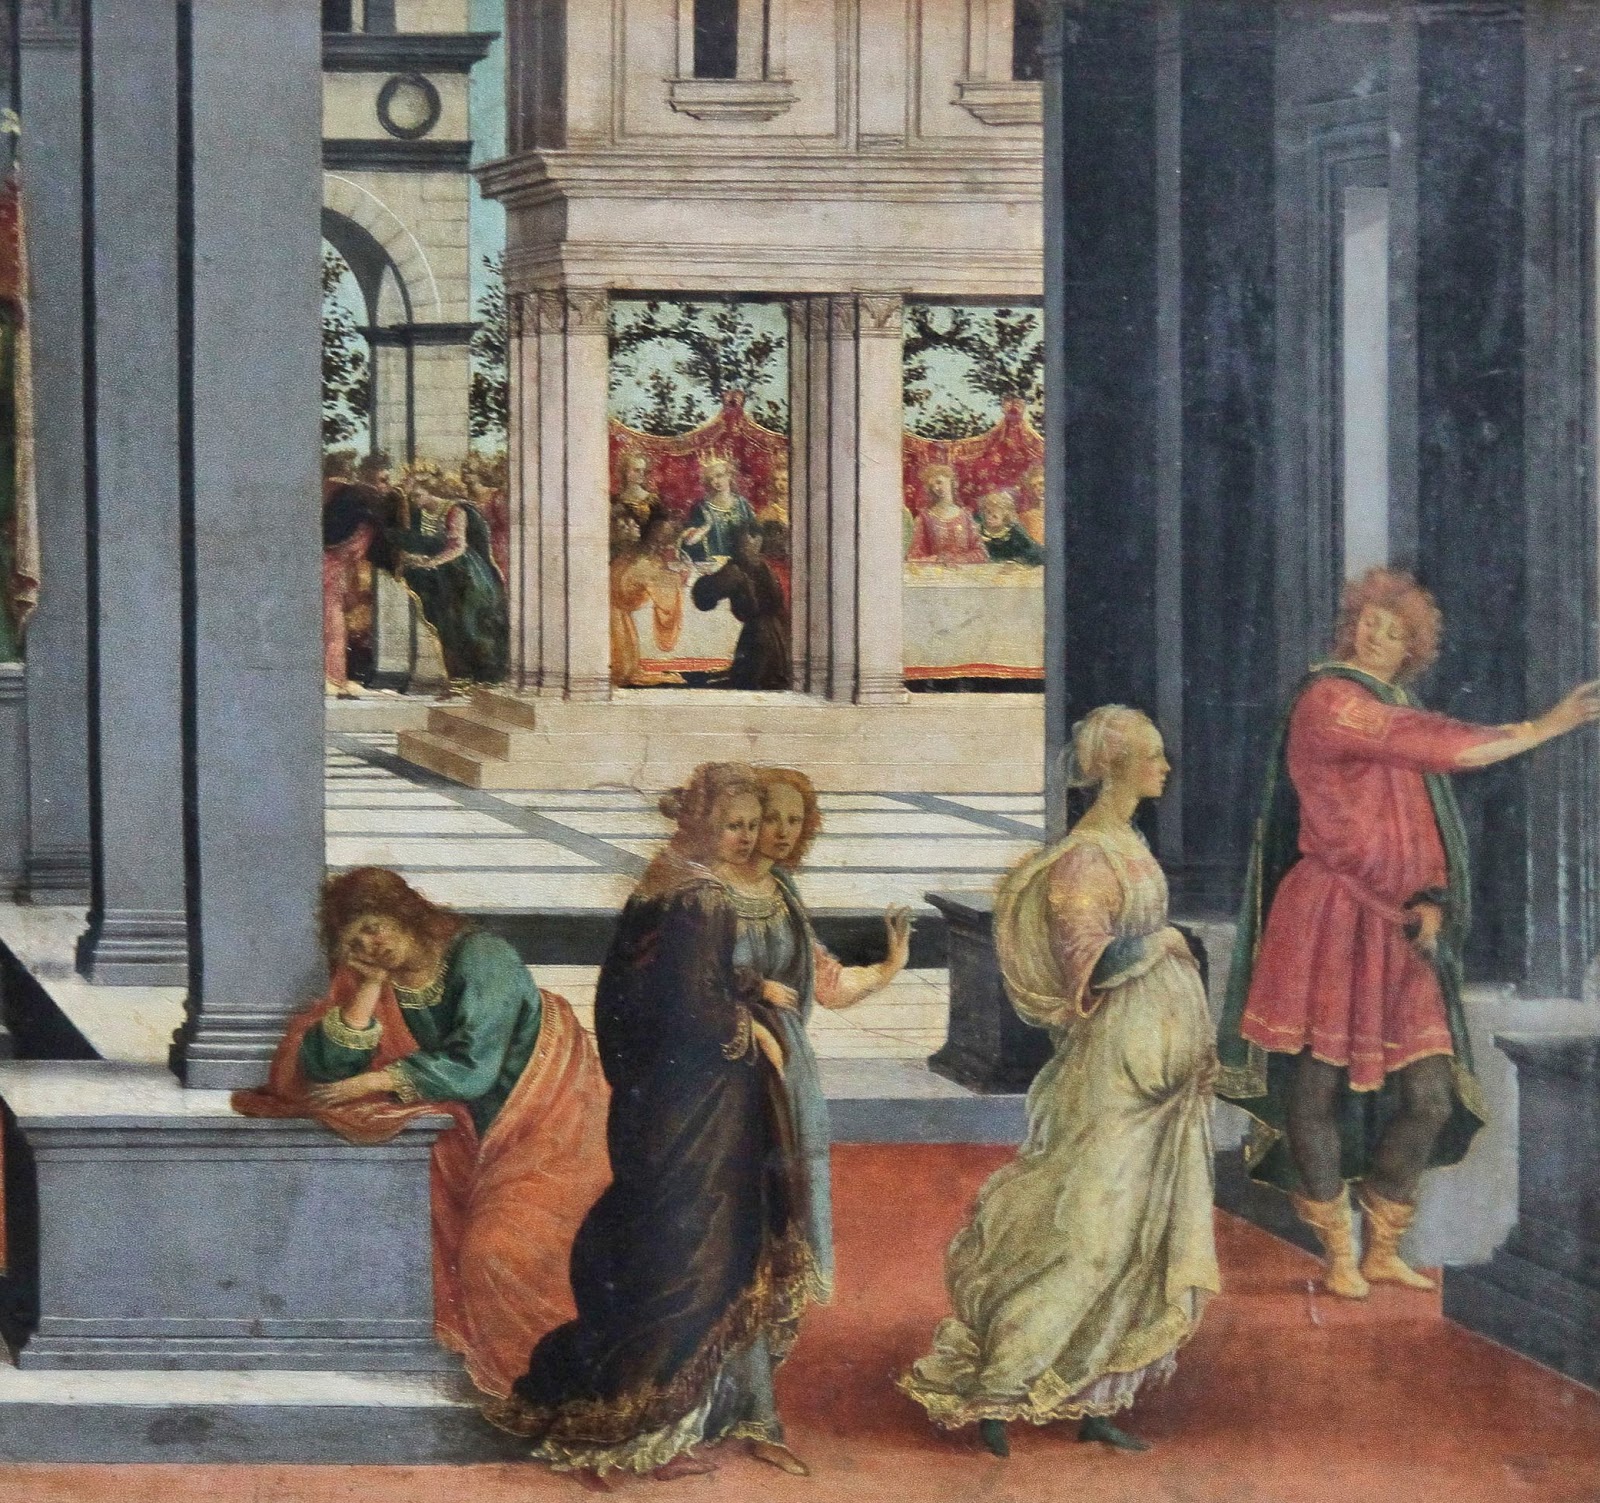 Filippino+Lippi-1457-1504 (7).jpg